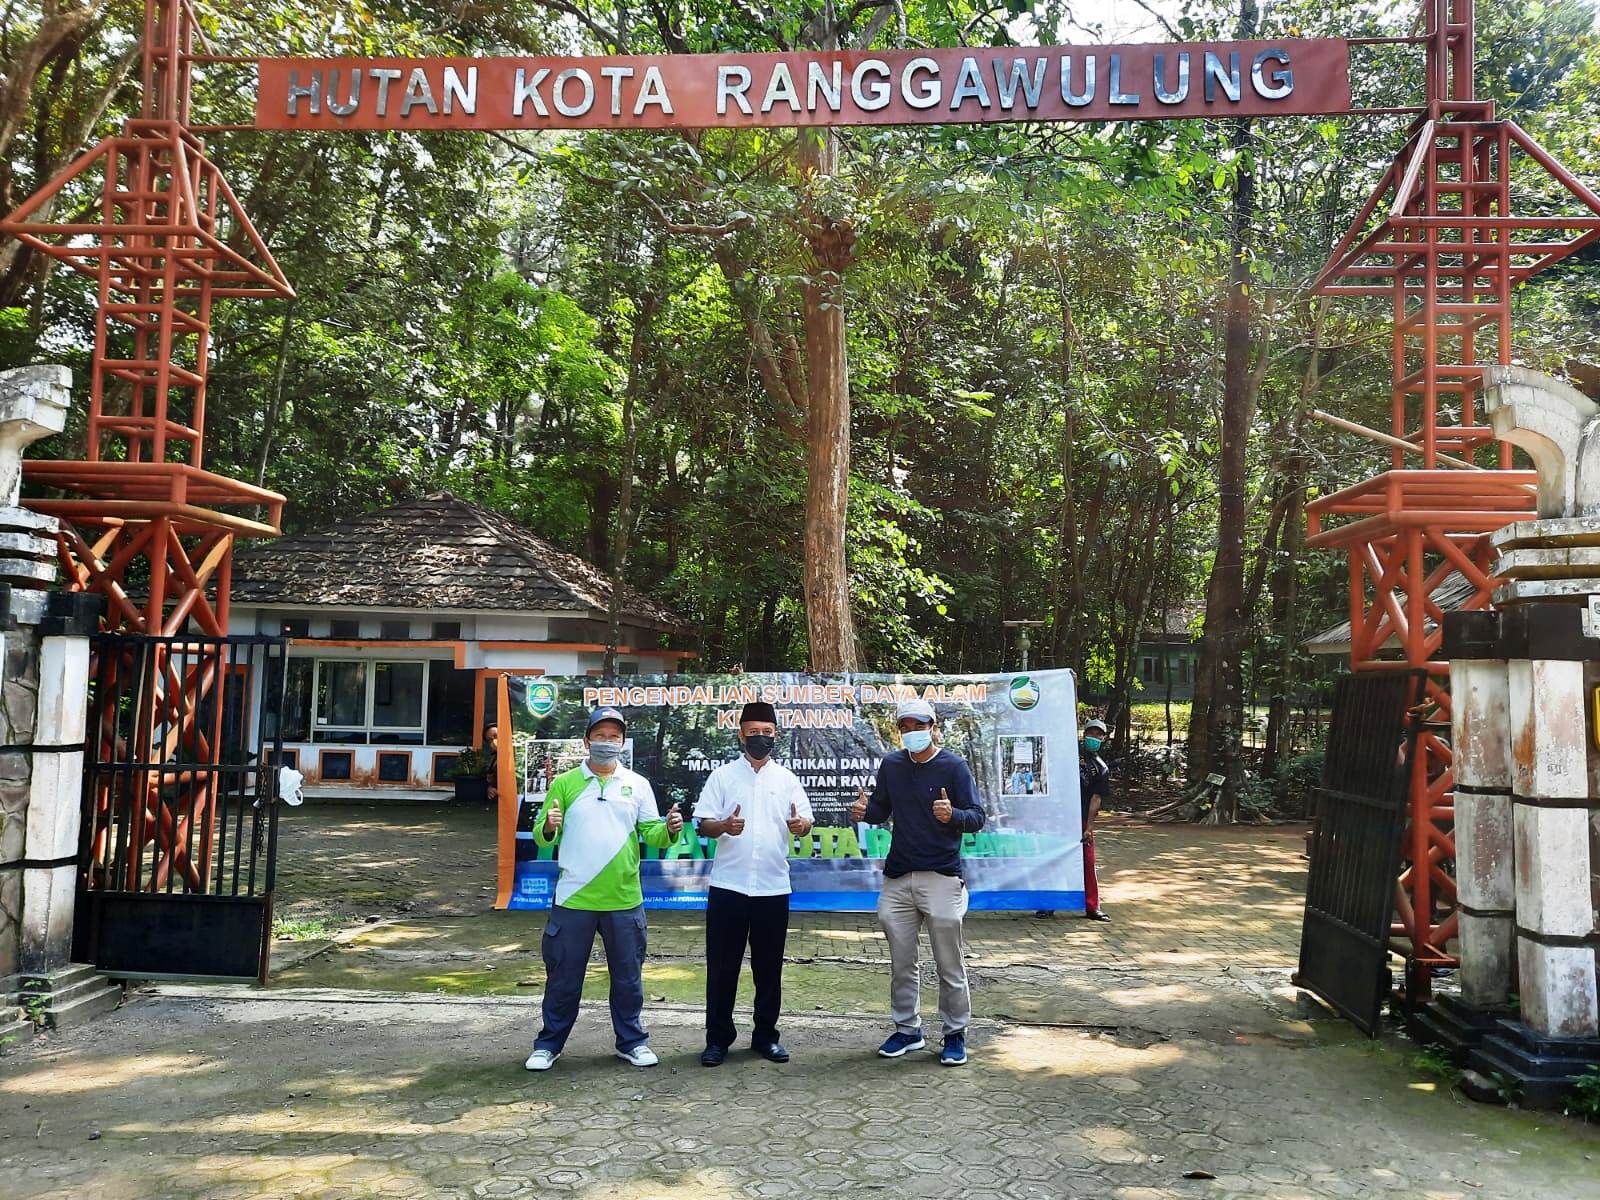 YUGO EROSPRI/PASUNDAN EKSPRES HUTAN KOTA: Gerbang masuk Hutan Kota Ranggawulung yang berada di Jalan Raya Subang-Bandung.